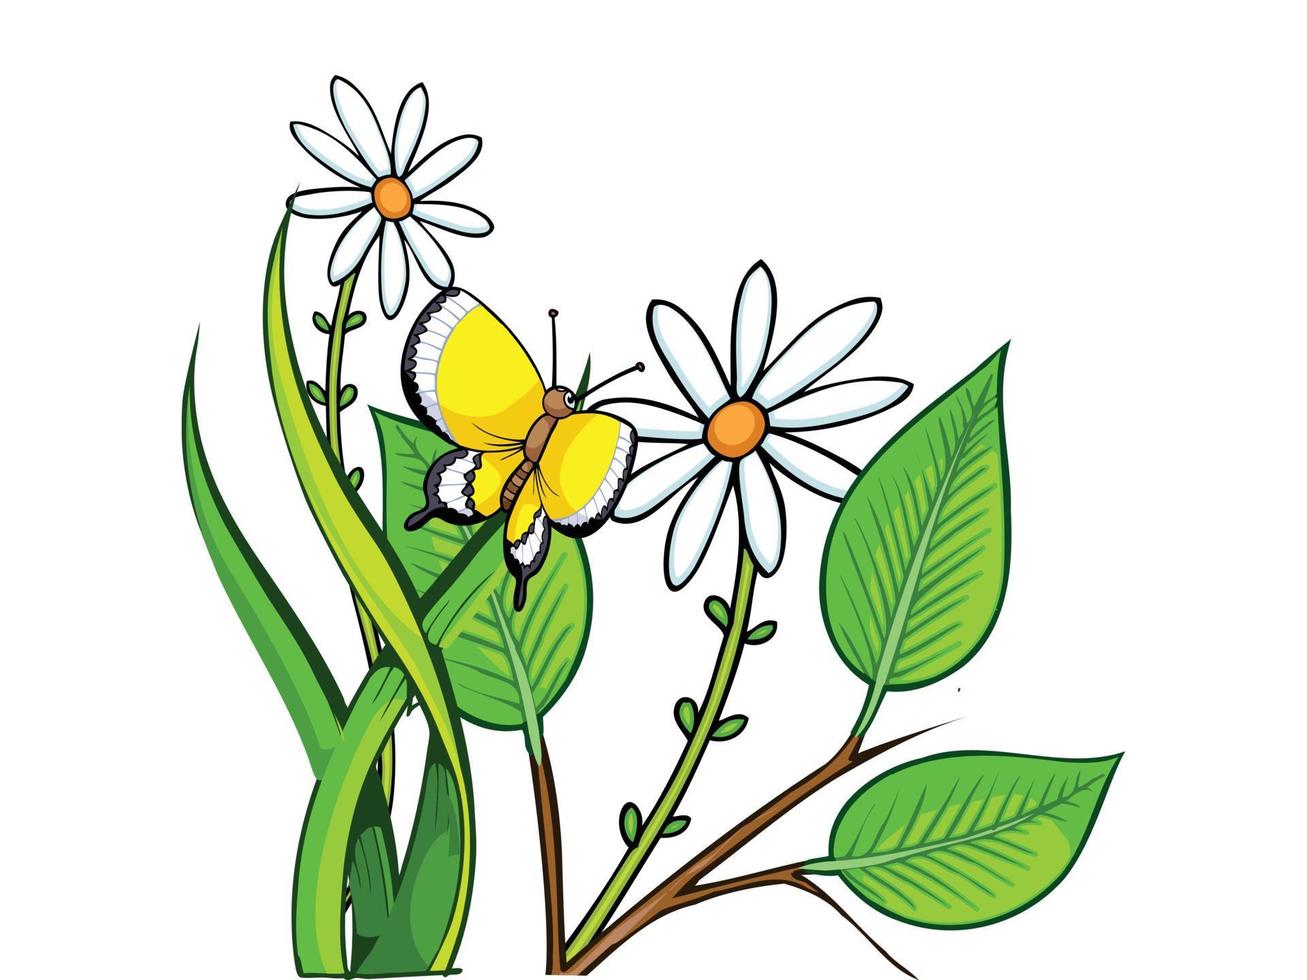 réaliste coloré magnifique fleur illustration vecteur